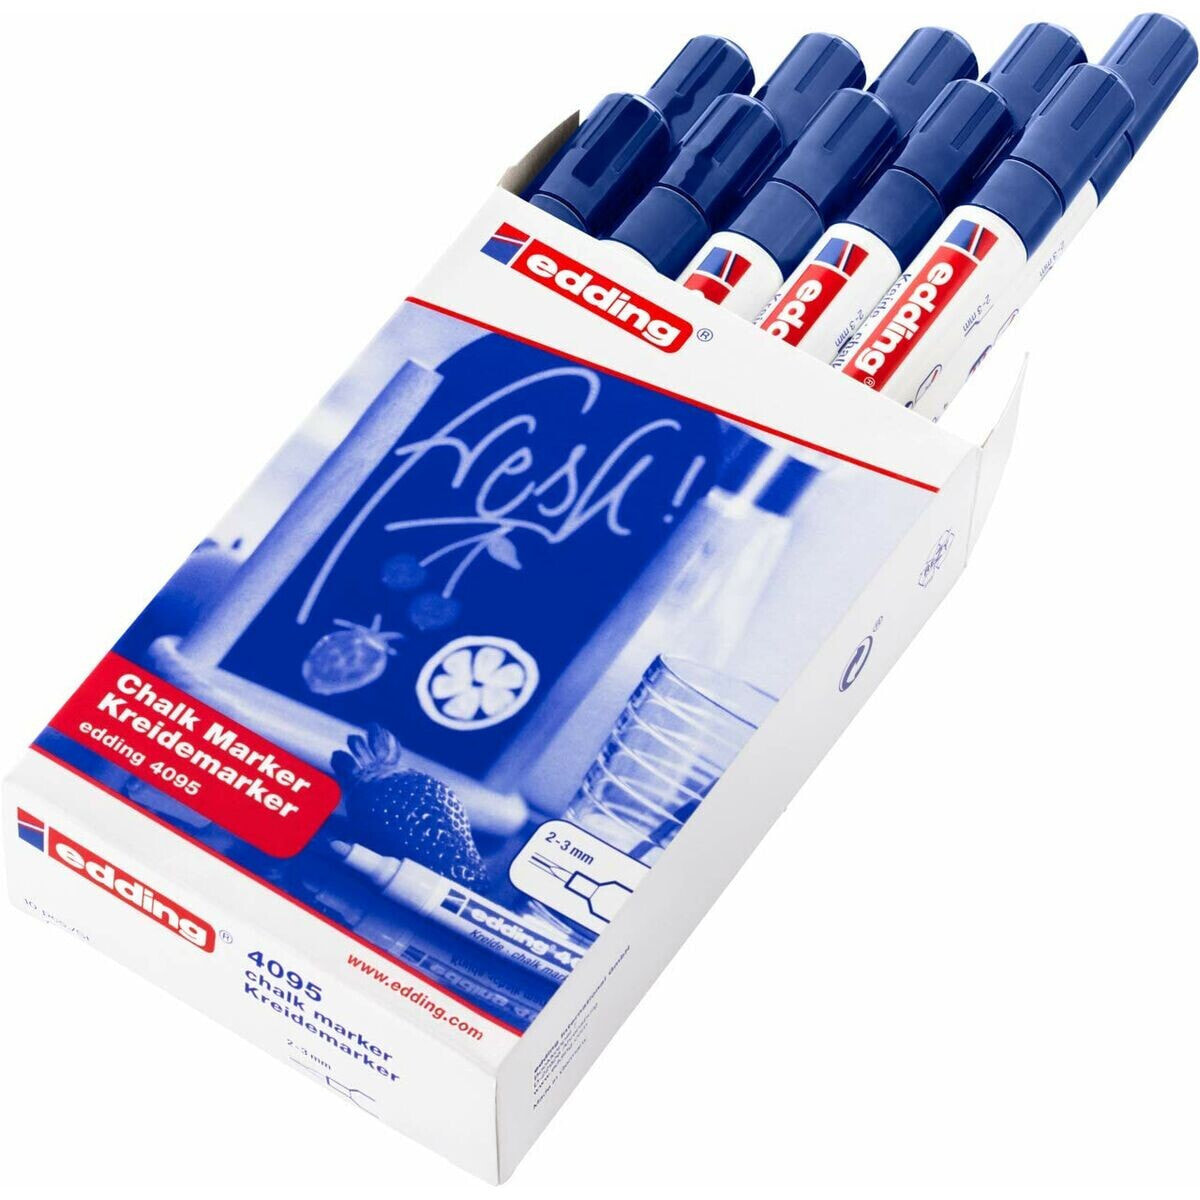 Жидкие маркеры Edding 4095 Синий (10 штук)